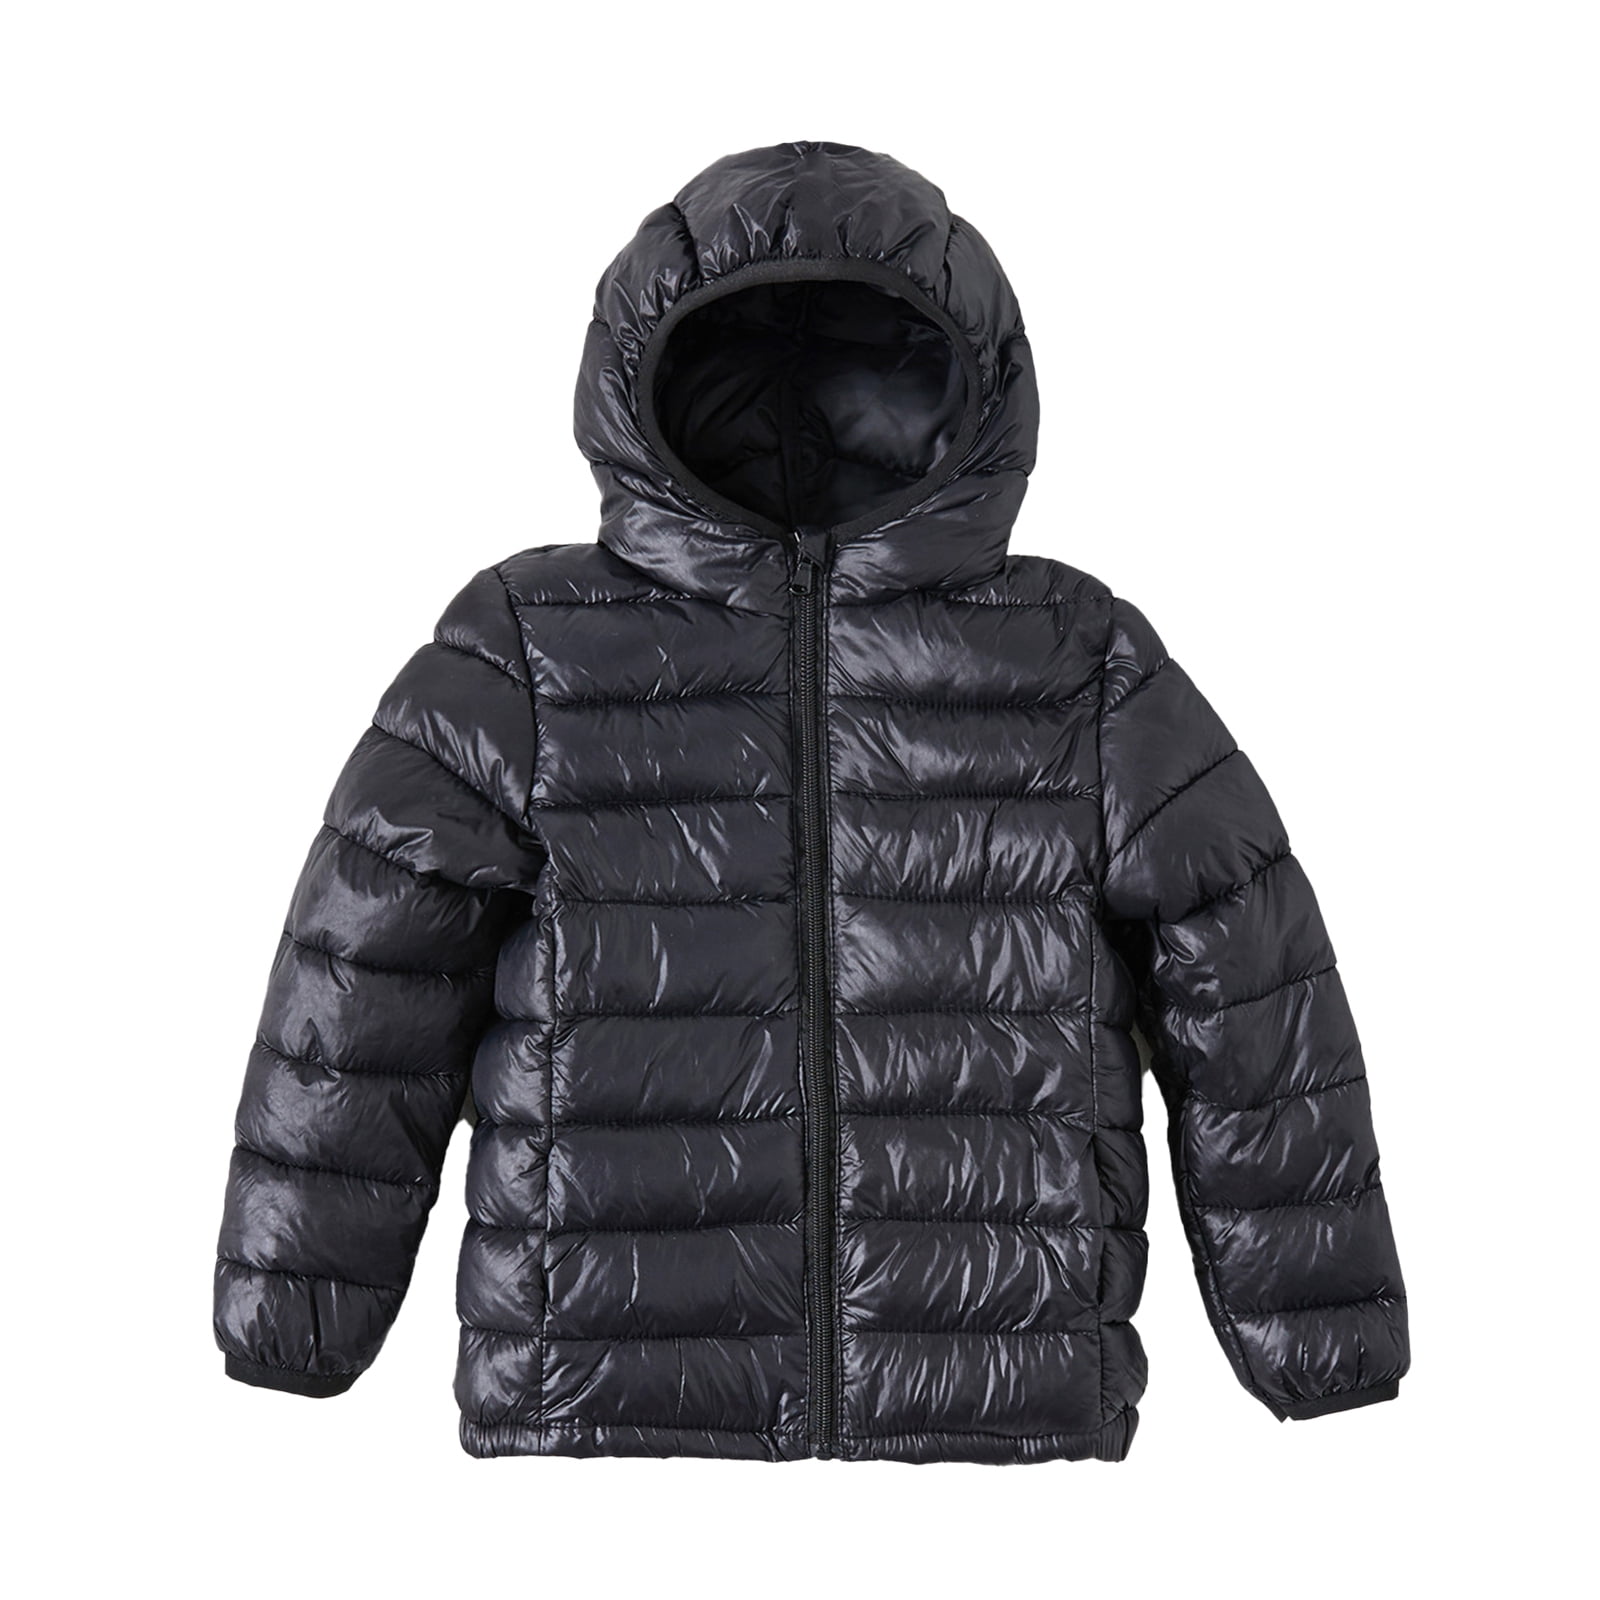 PatPat Kid Boys Girls Puffer Jacket Lightweight Zipper Winter Coat Size ...